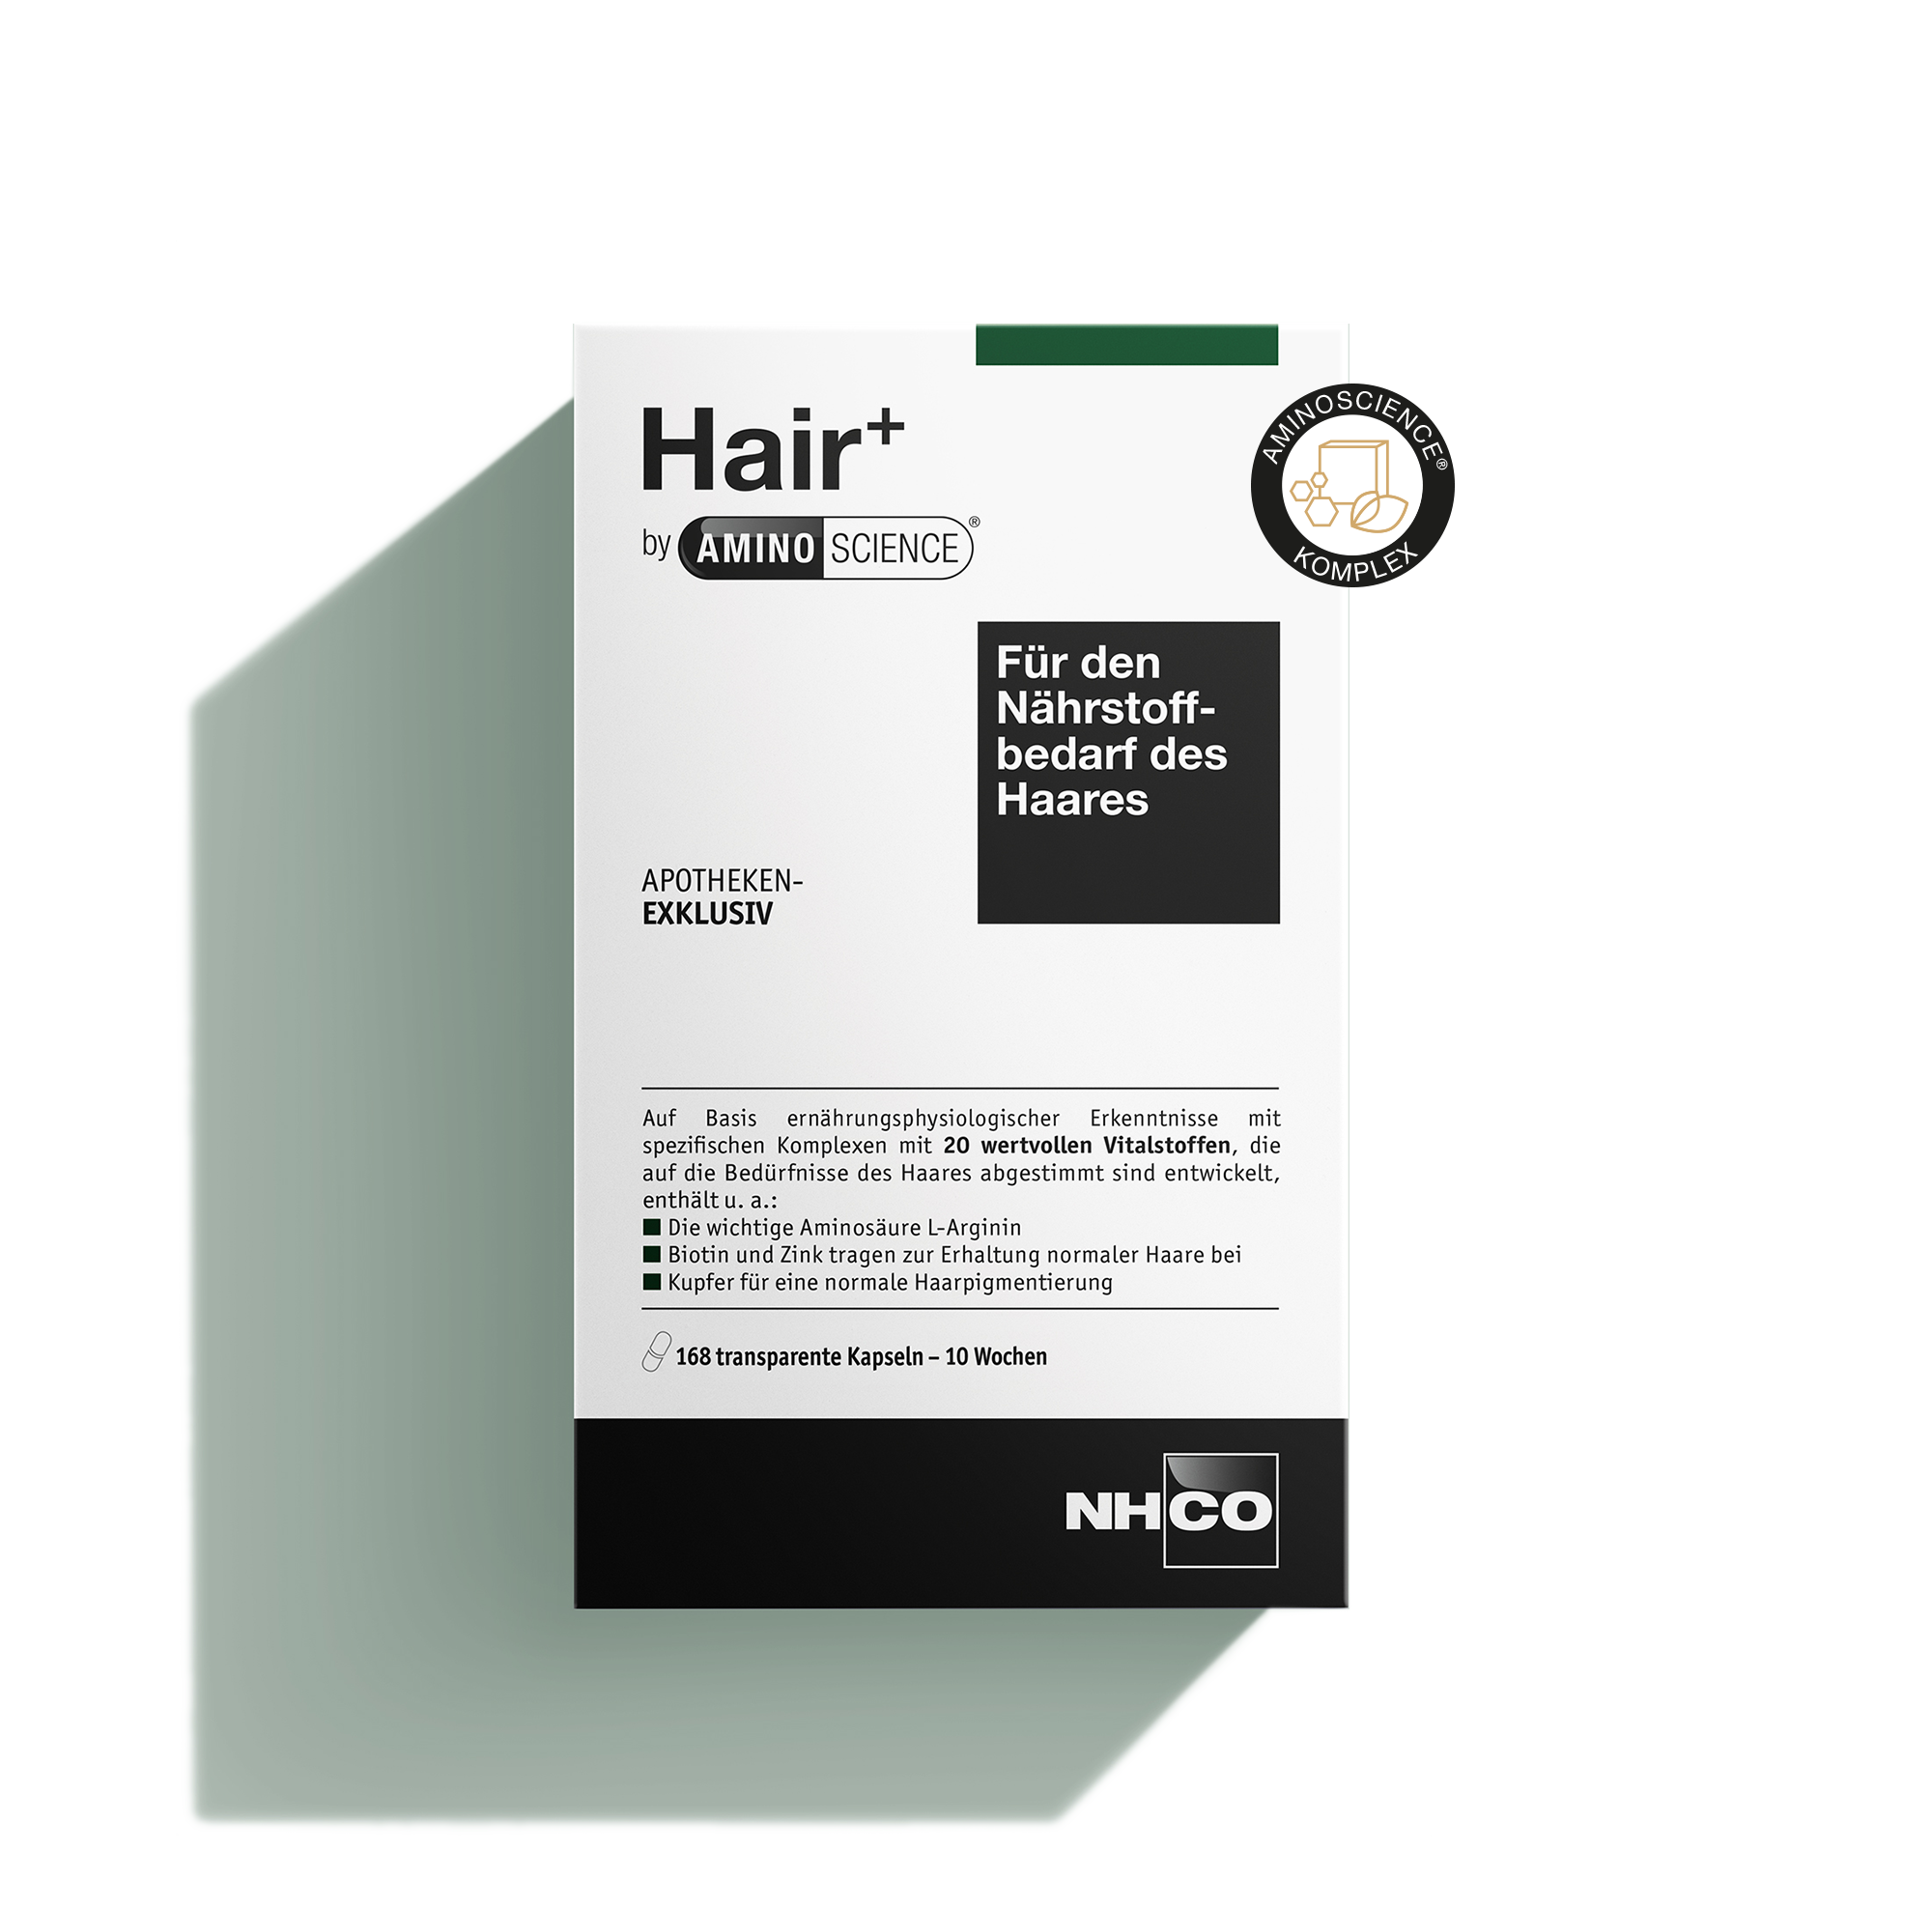 Nährstoffkomplex Hair+ von NHCO mit Aminosäuren für die Haargesundheit, Apothekenexklusiv.